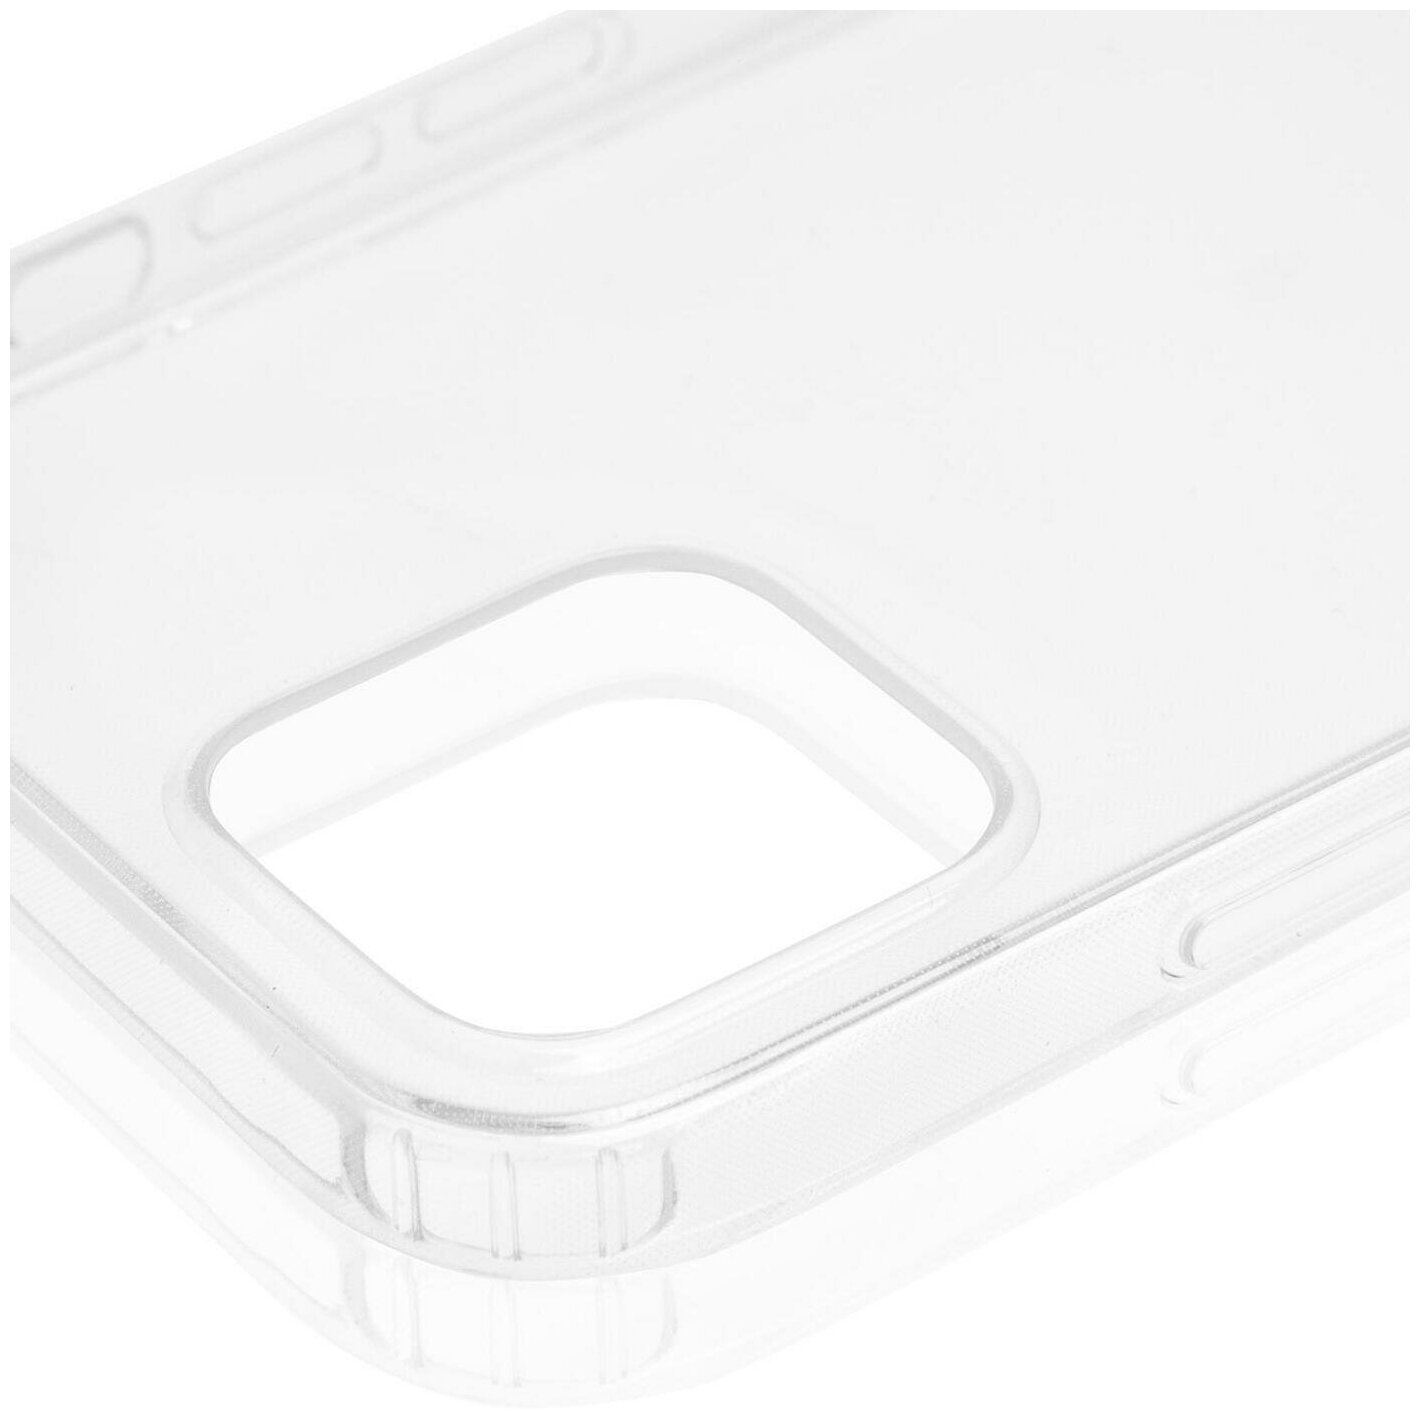 Чехол для iPhone 12 и iPhone 12 Pro, силиконовый чехол, тонкий, с защитой блока камеры, прозрачный